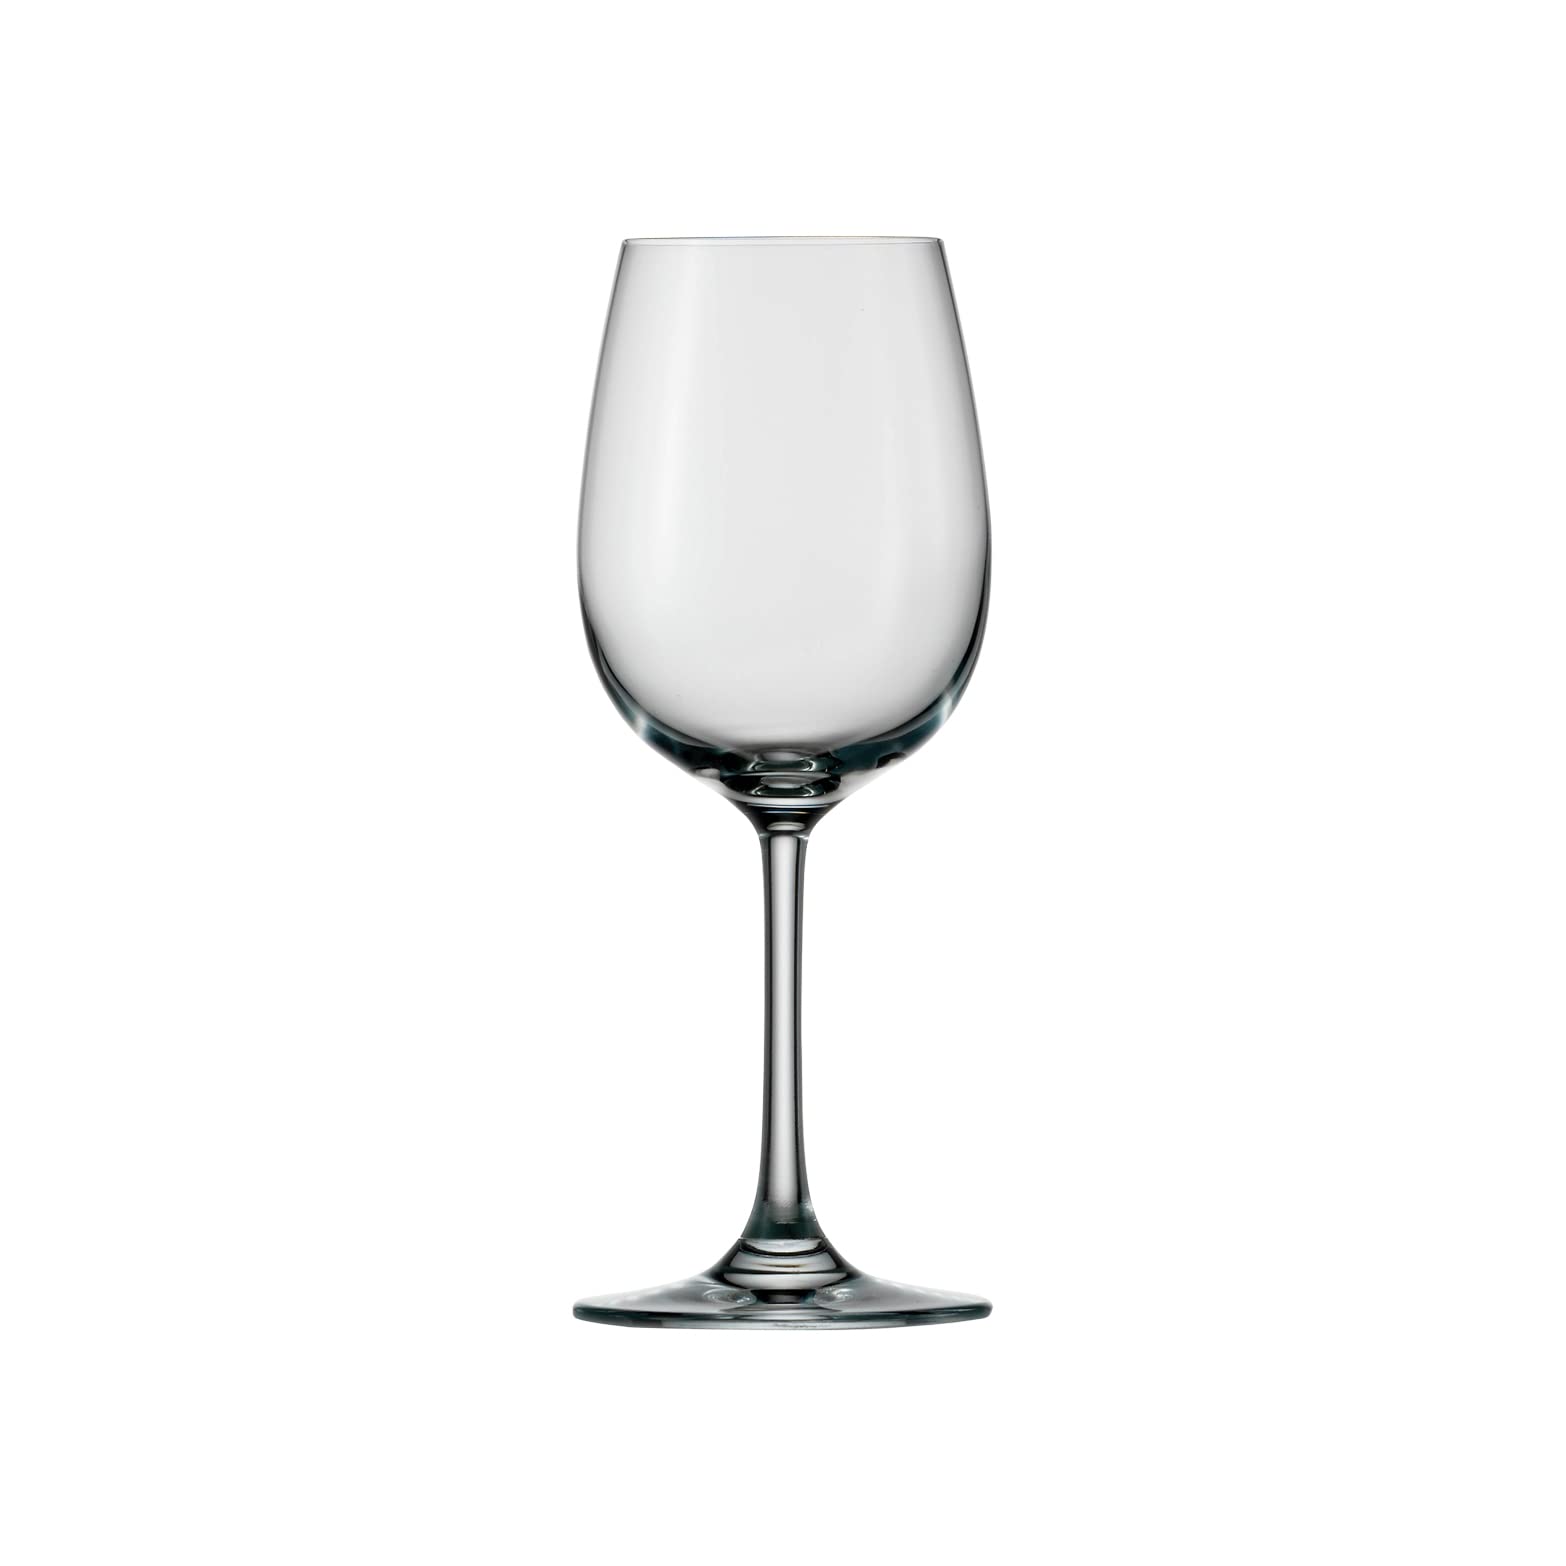 Stölzle Lausitz Weißweinglas aus der Weinland Kollektion, Fassungsvermögen: 290 ml, 6er Set, spülmaschinentauglich, Maße: Höhe: 19 cm, Außendurchmesser: 7,5 cm, 1000003